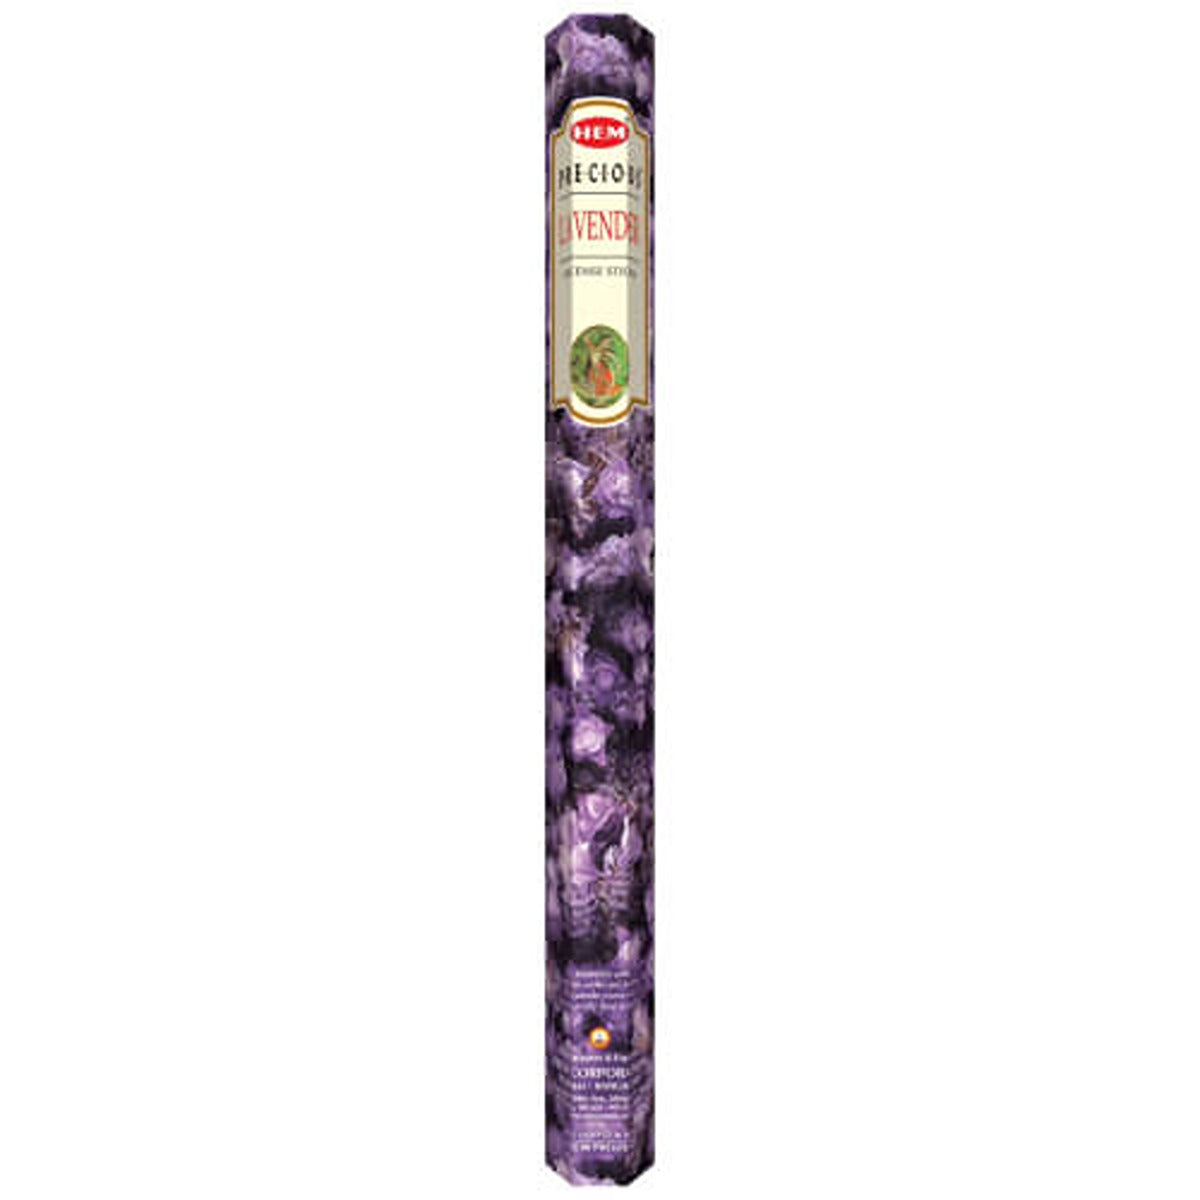 HEM - Lavander Incense - 20 Stick - Continental Food Store